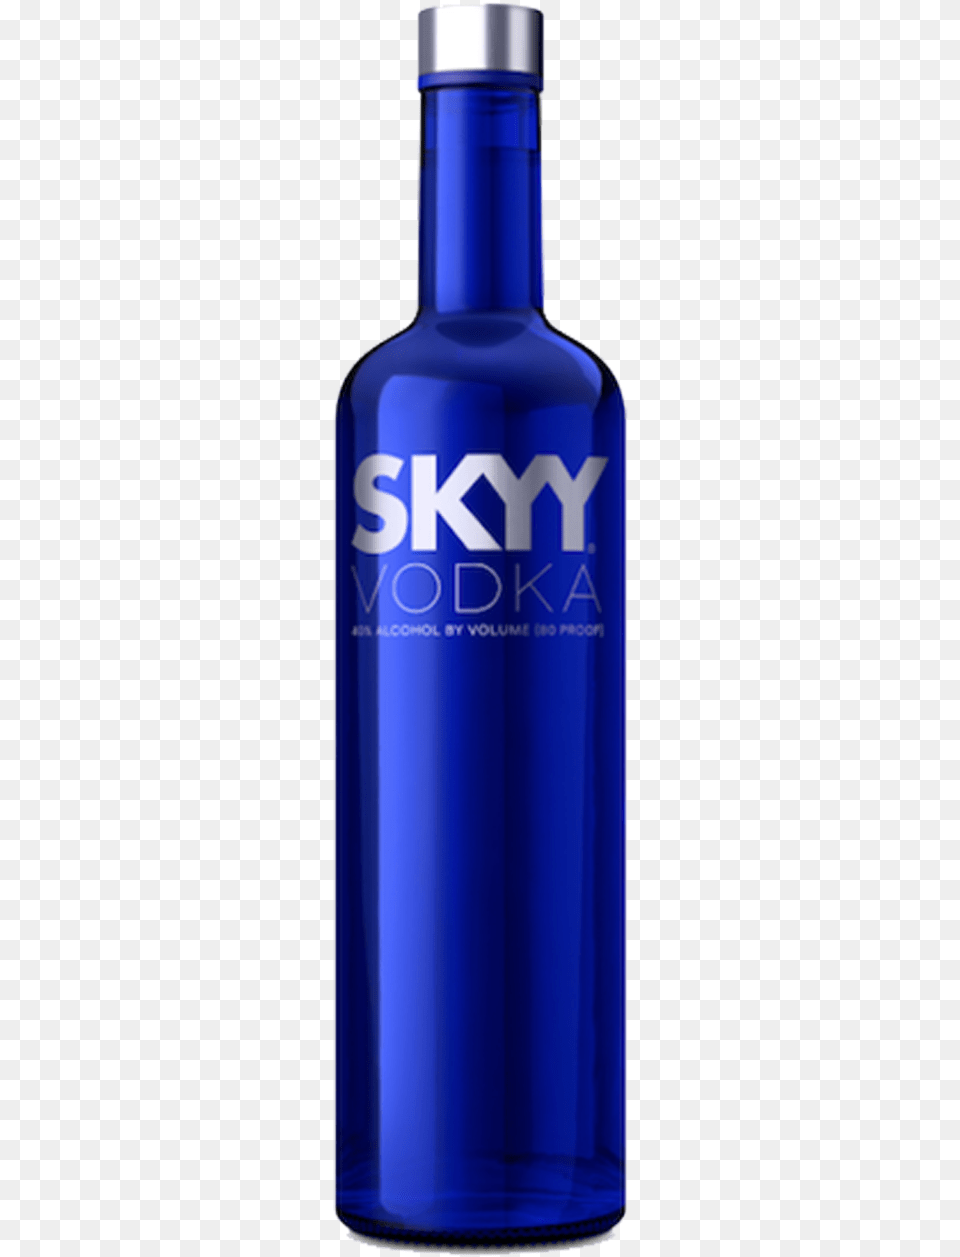 Skyy Vodka, Bottle, Shaker, Alcohol, Beverage Free Png Download